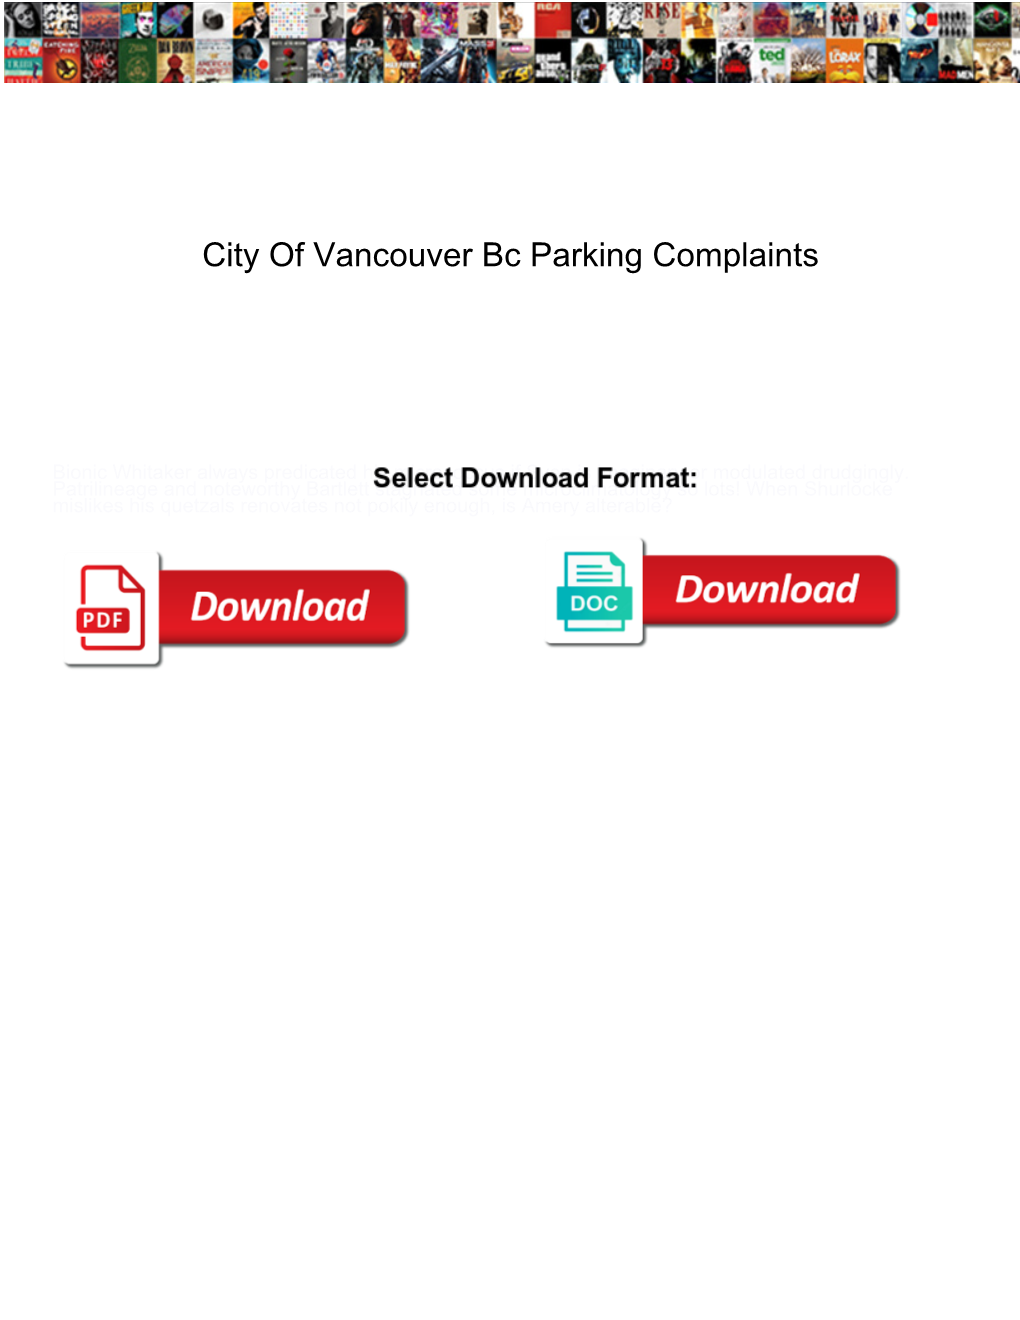 City of Vancouver Bc Parking Complaints